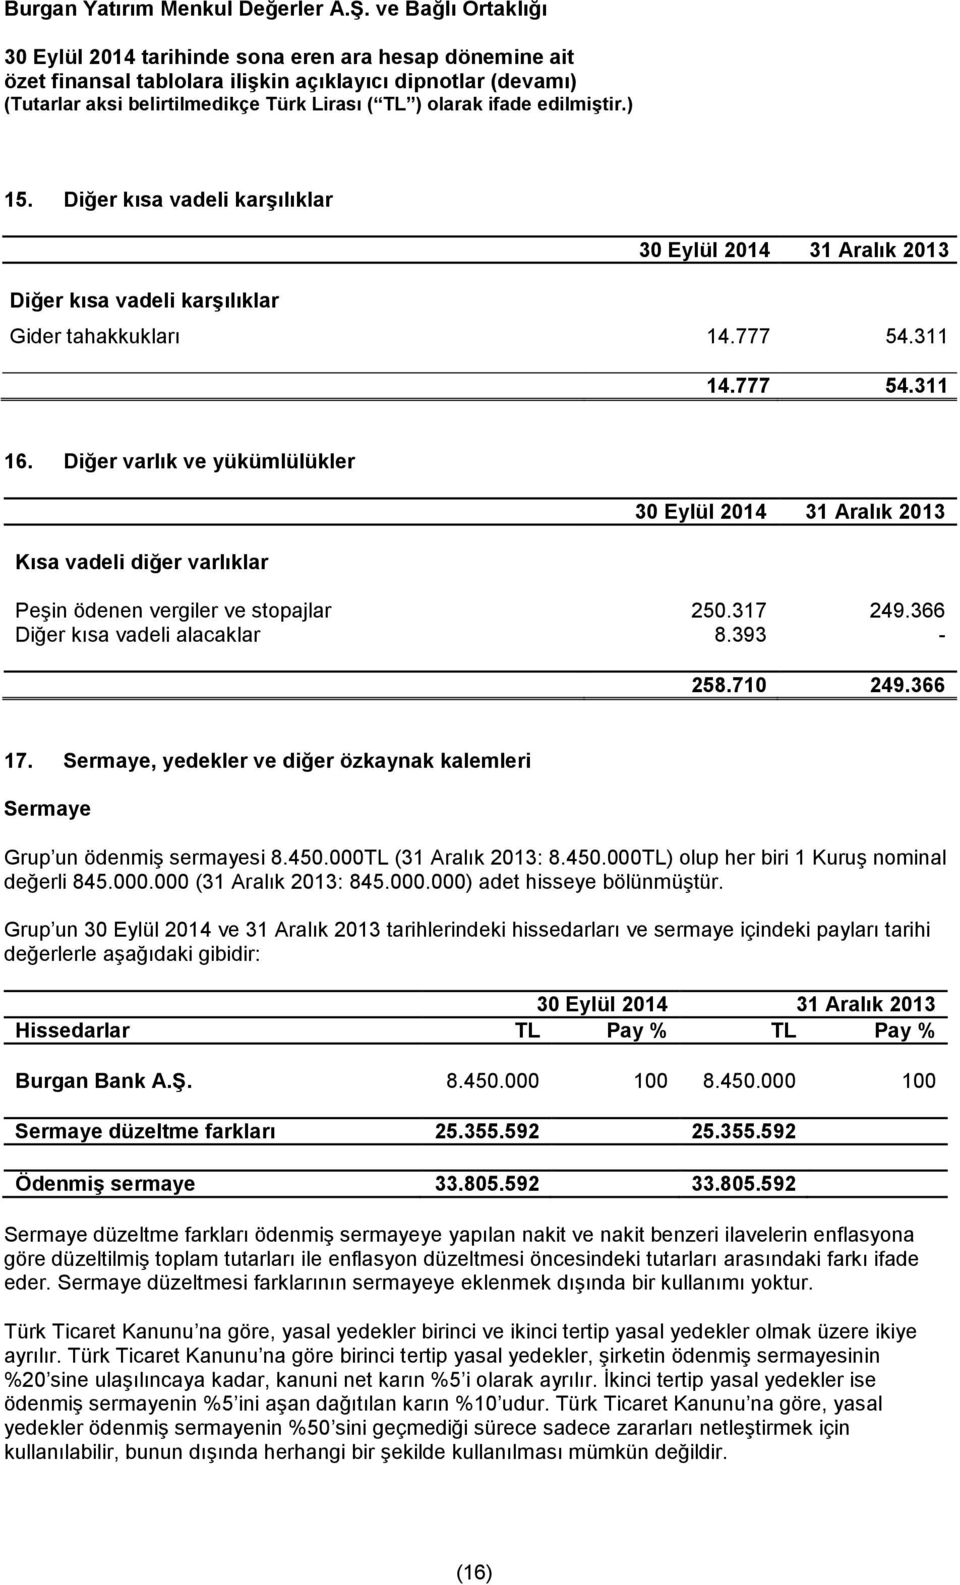 Sermaye, yedekler ve diğer özkaynak kalemleri Sermaye Grup un ödenmiş sermayesi 8.450.000TL (31 Aralık 2013: 8.450.000TL) olup her biri 1 Kuruş nominal değerli 845.000.000 (31 Aralık 2013: 845.000.000) adet hisseye bölünmüştür.